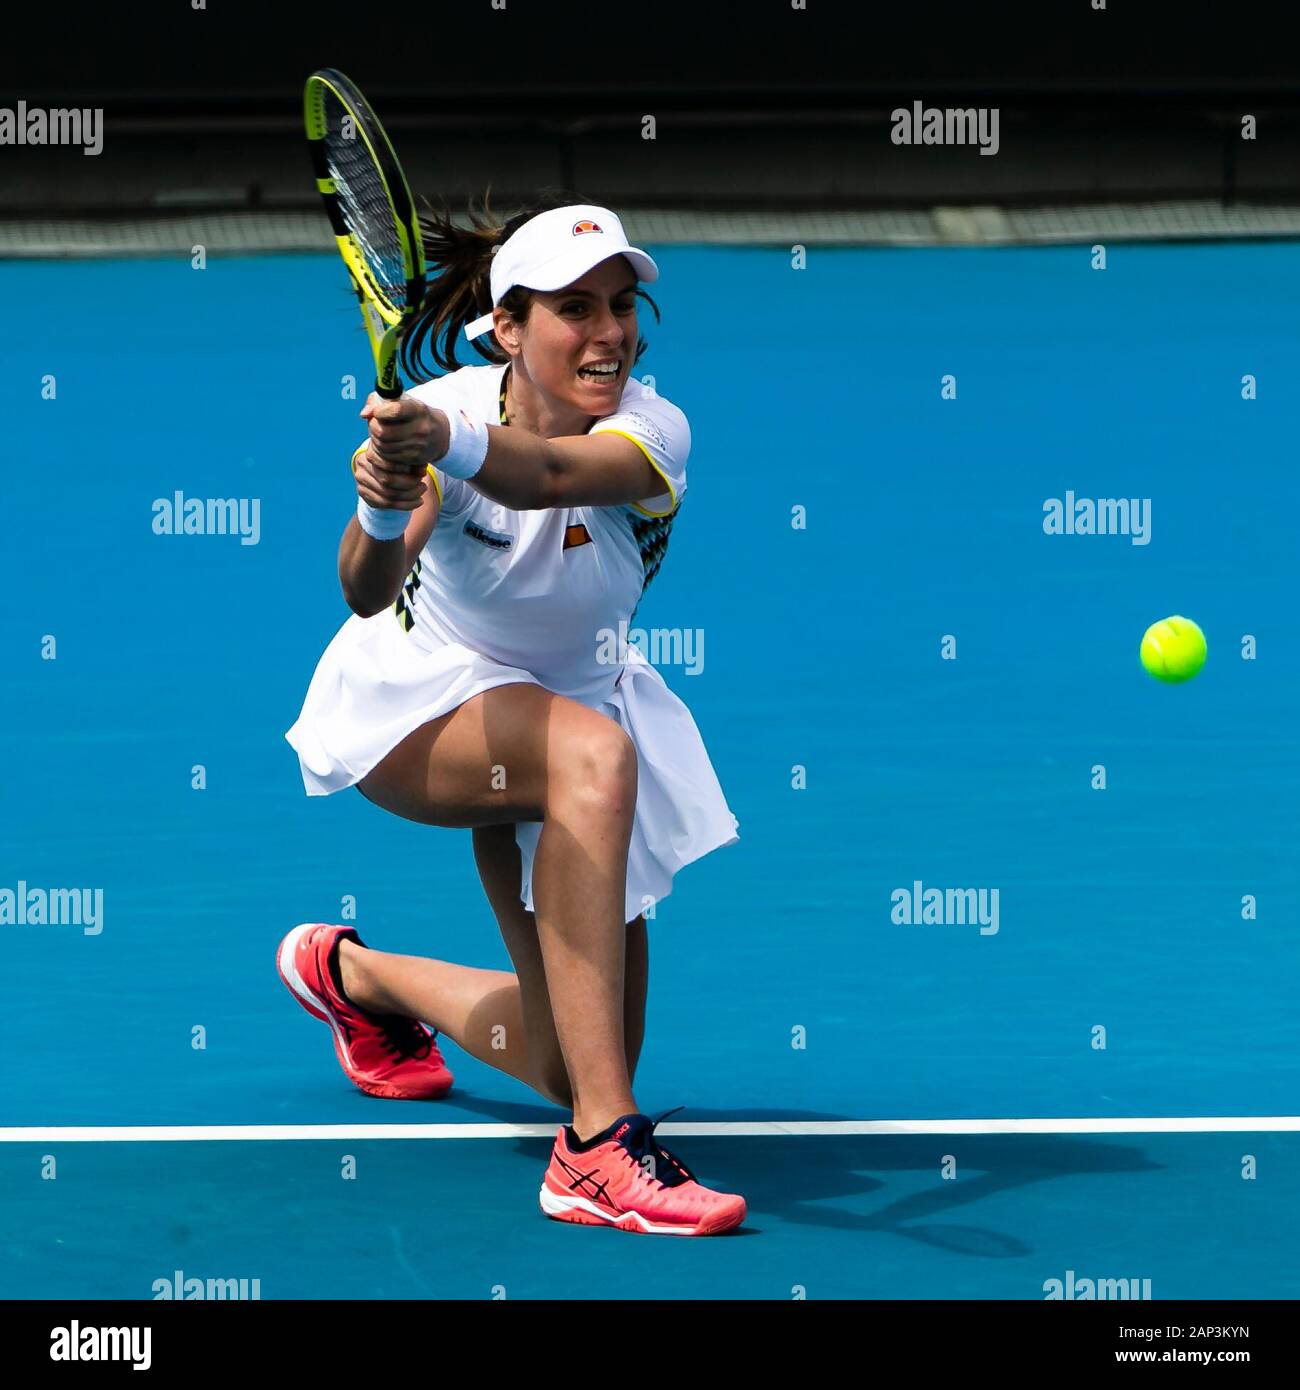 Melbourne, Australie. 21 Jan, 2020. Johanna Konta de Grande-Bretagne est en action au cours de son 1er tour à l'Australian Open 2020 Tournoi de tennis du Grand Chelem à Melbourne, Australie. Frank Molter/Alamy live news Banque D'Images